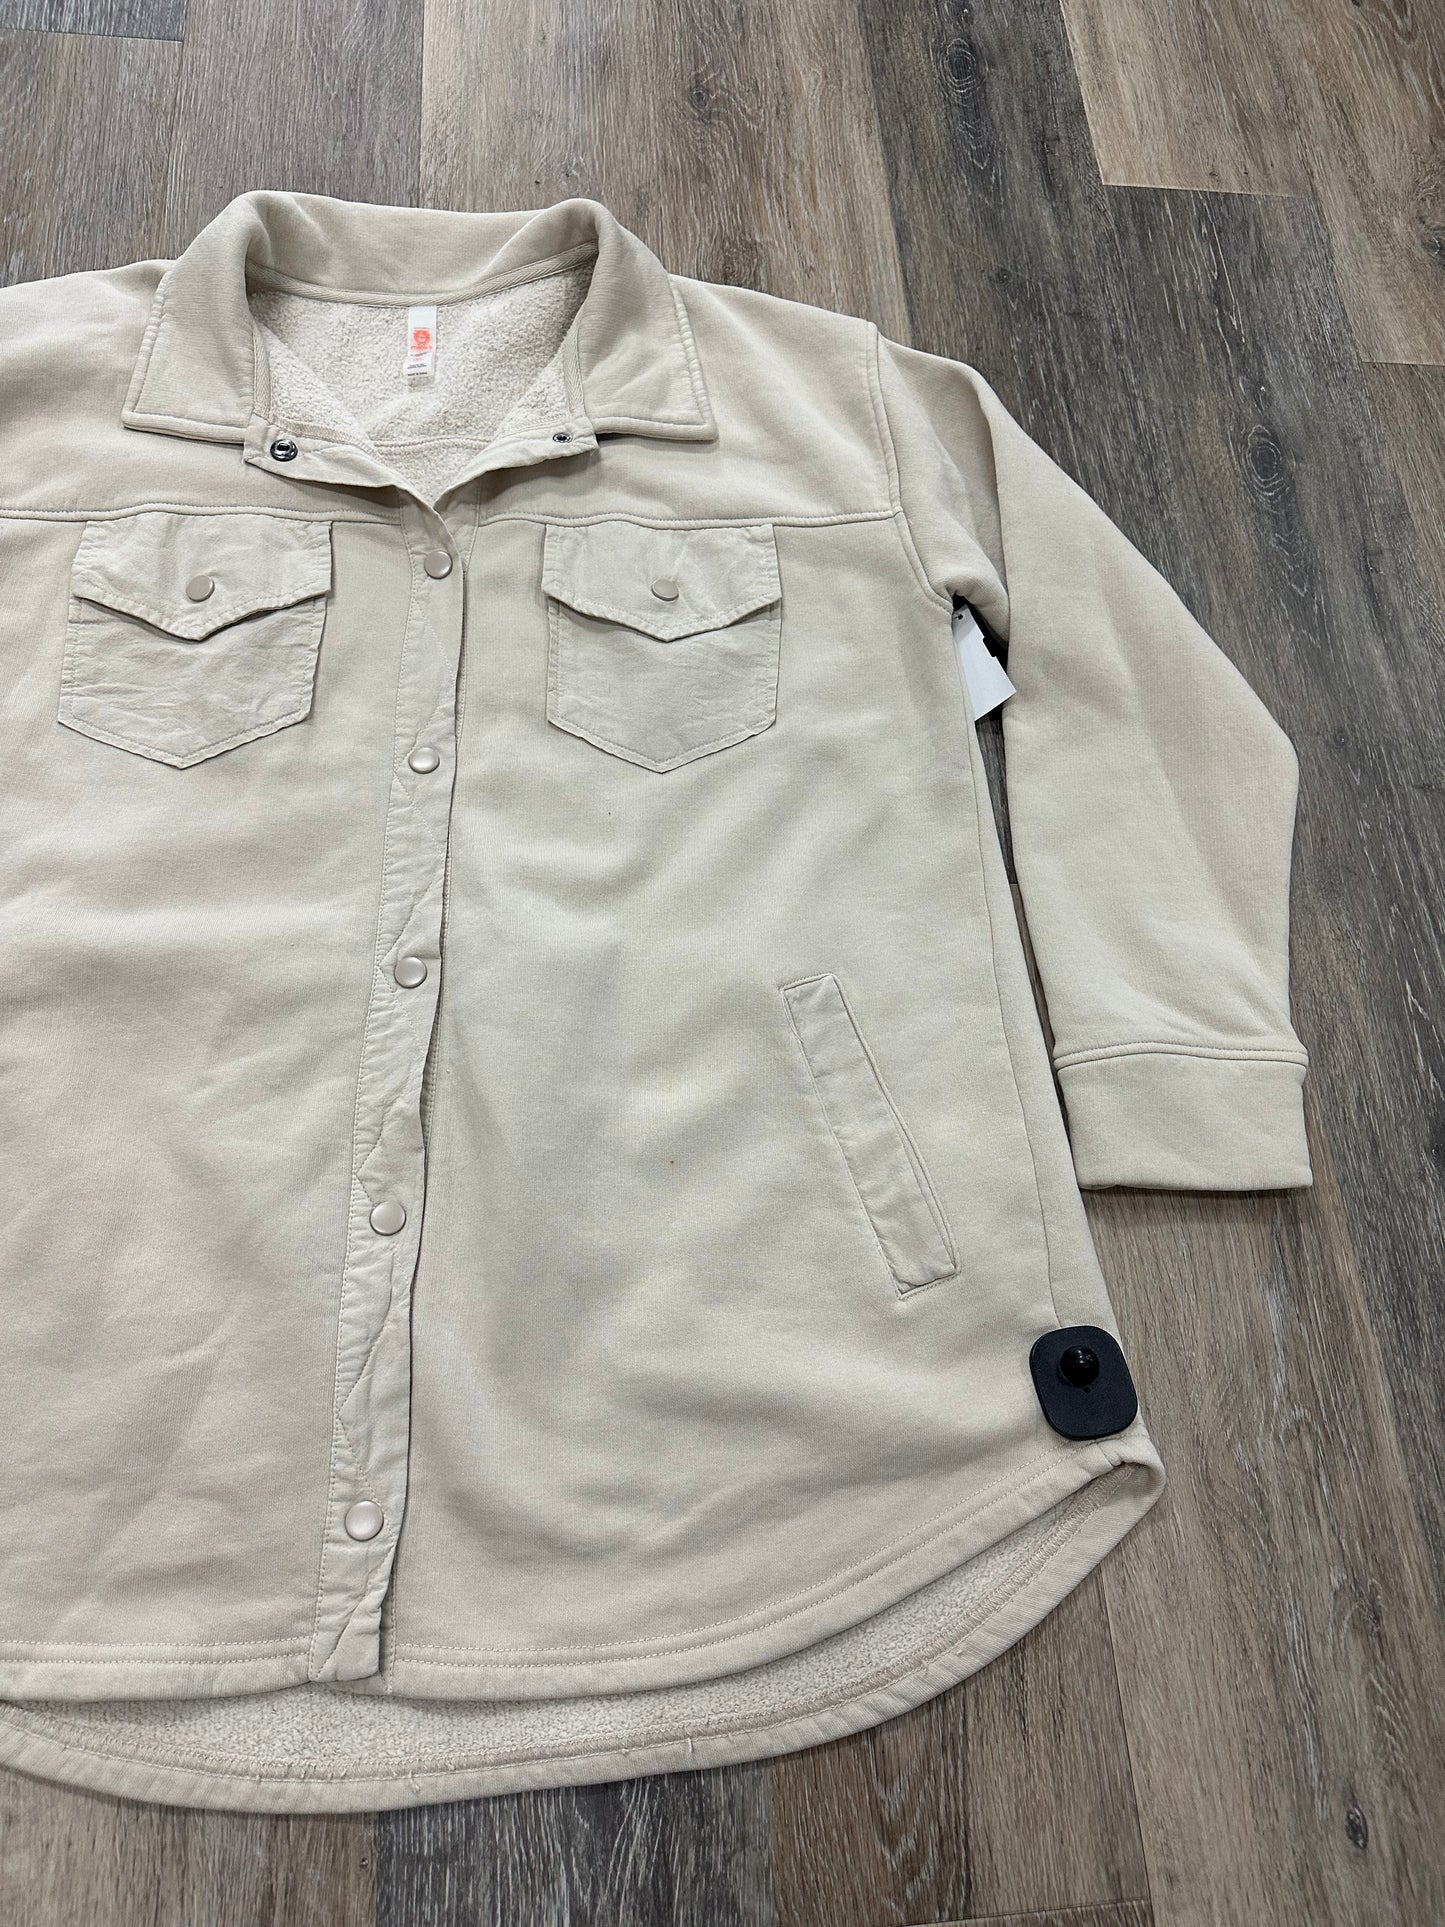 Jacket Shirt By Mono B  Size: 1x